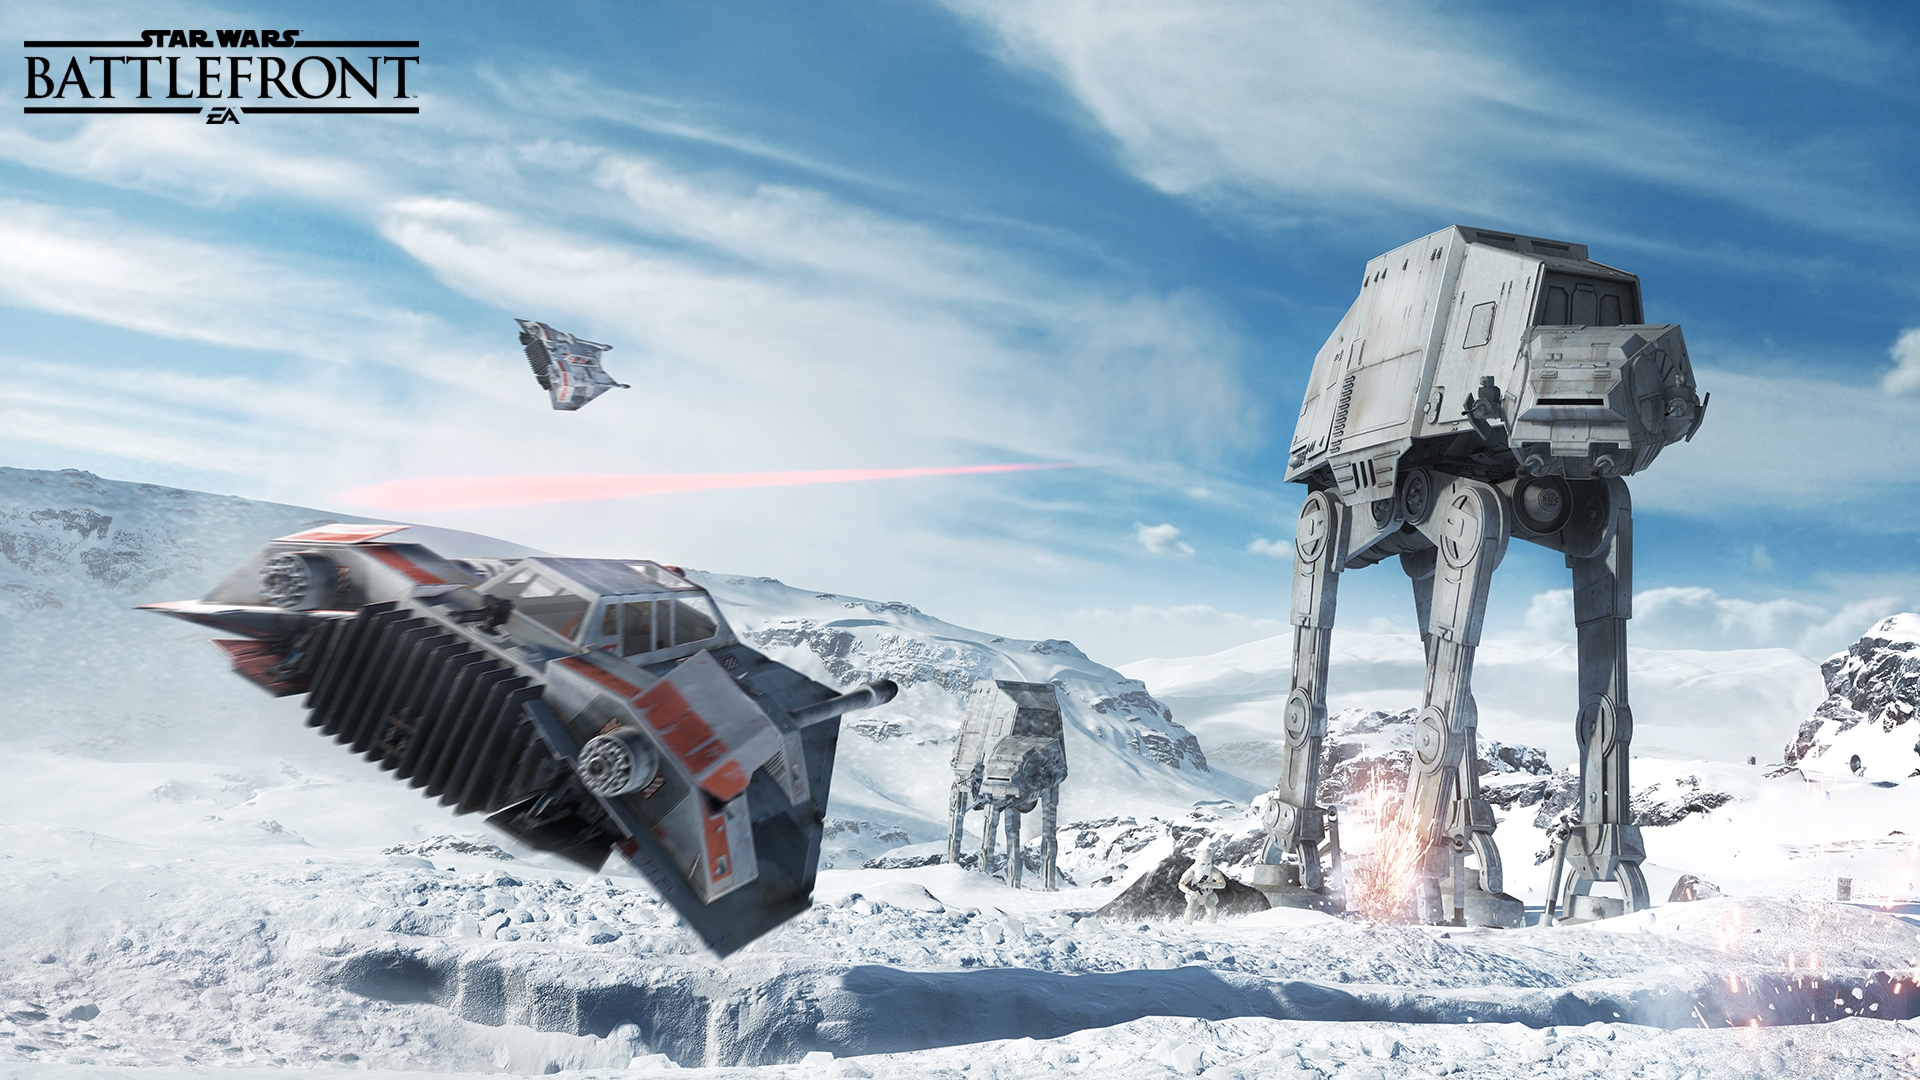 Скриншот из игры Star Wars: Battlefront (2015) под номером 33